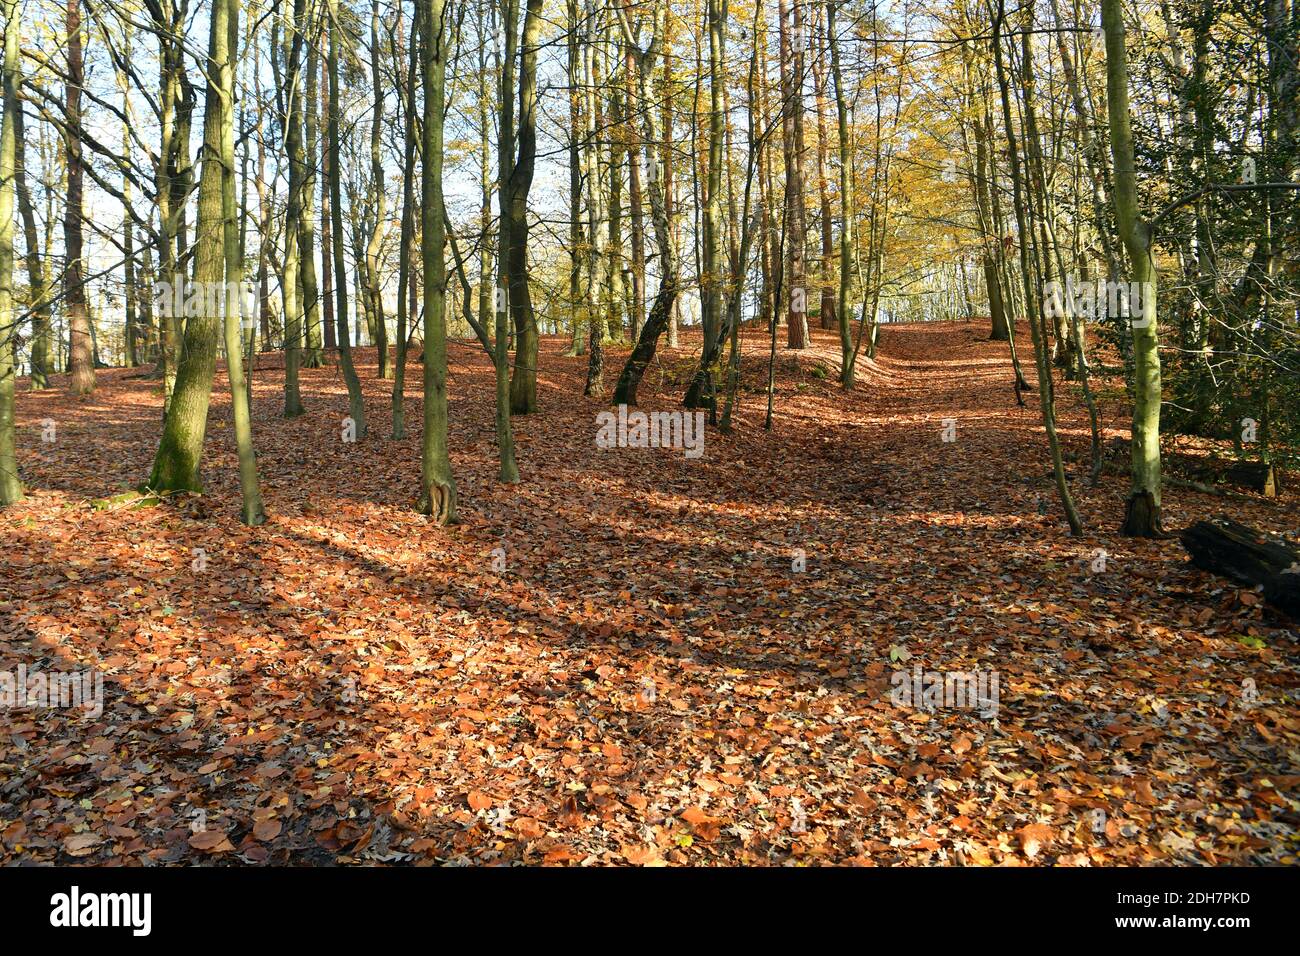 Fotos für eine Funktion auf Wellesley Woodland, Aldershot - Herbstwochenende Spaziergänge Feature. Waldwege. Stockfoto